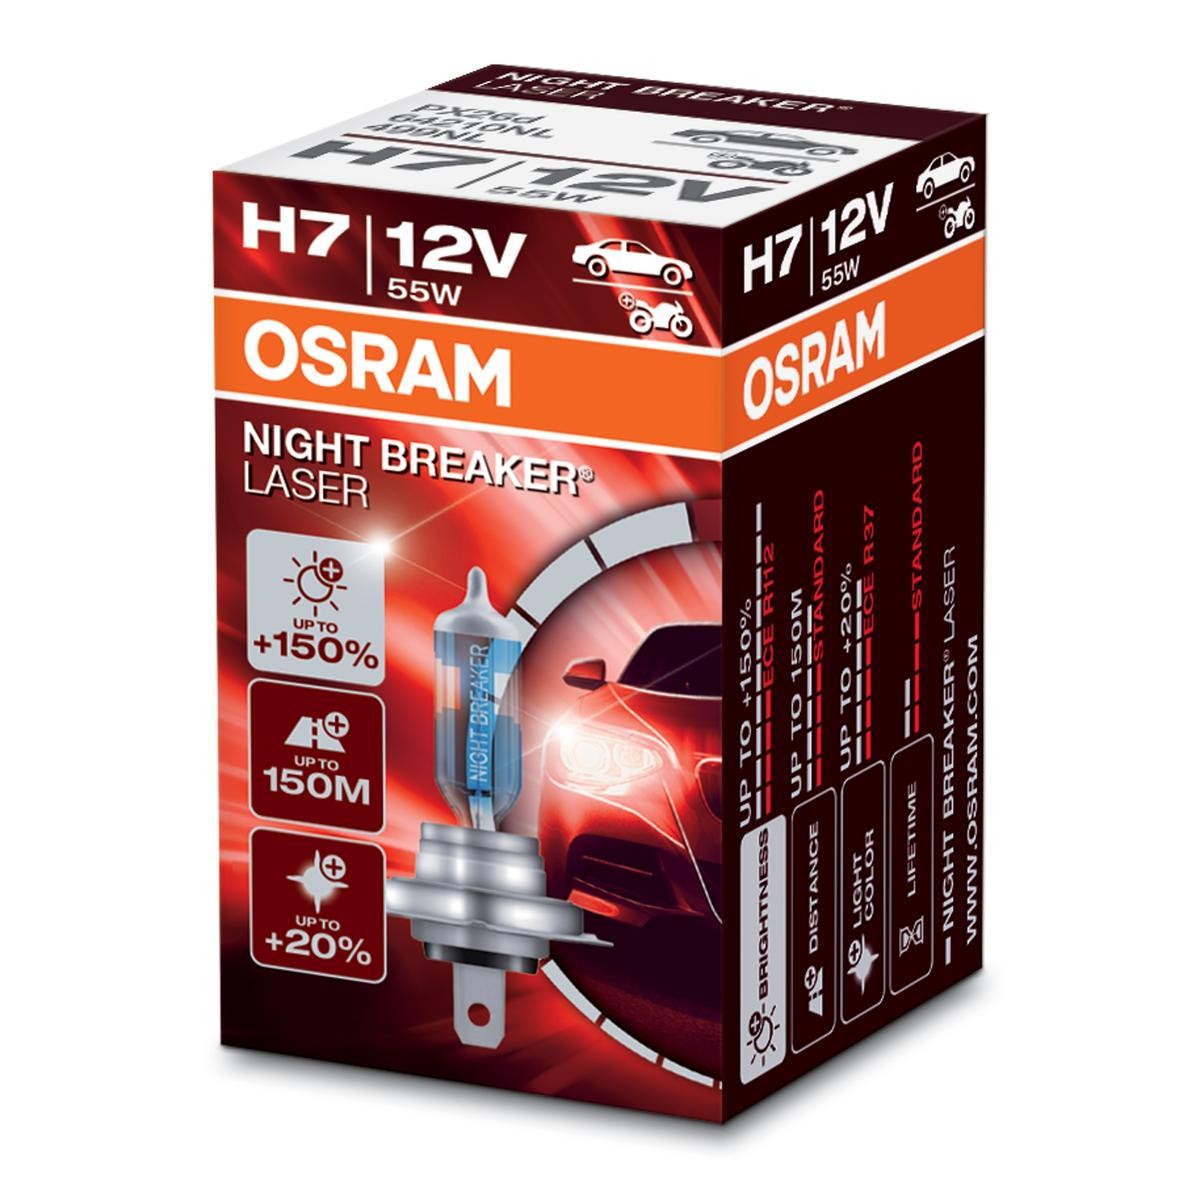 Headlight bulb OSRAM NIGHT BREAKER LASER next Generation H7 12V 55W PX26d, 4050K, Halogen - 64210NL